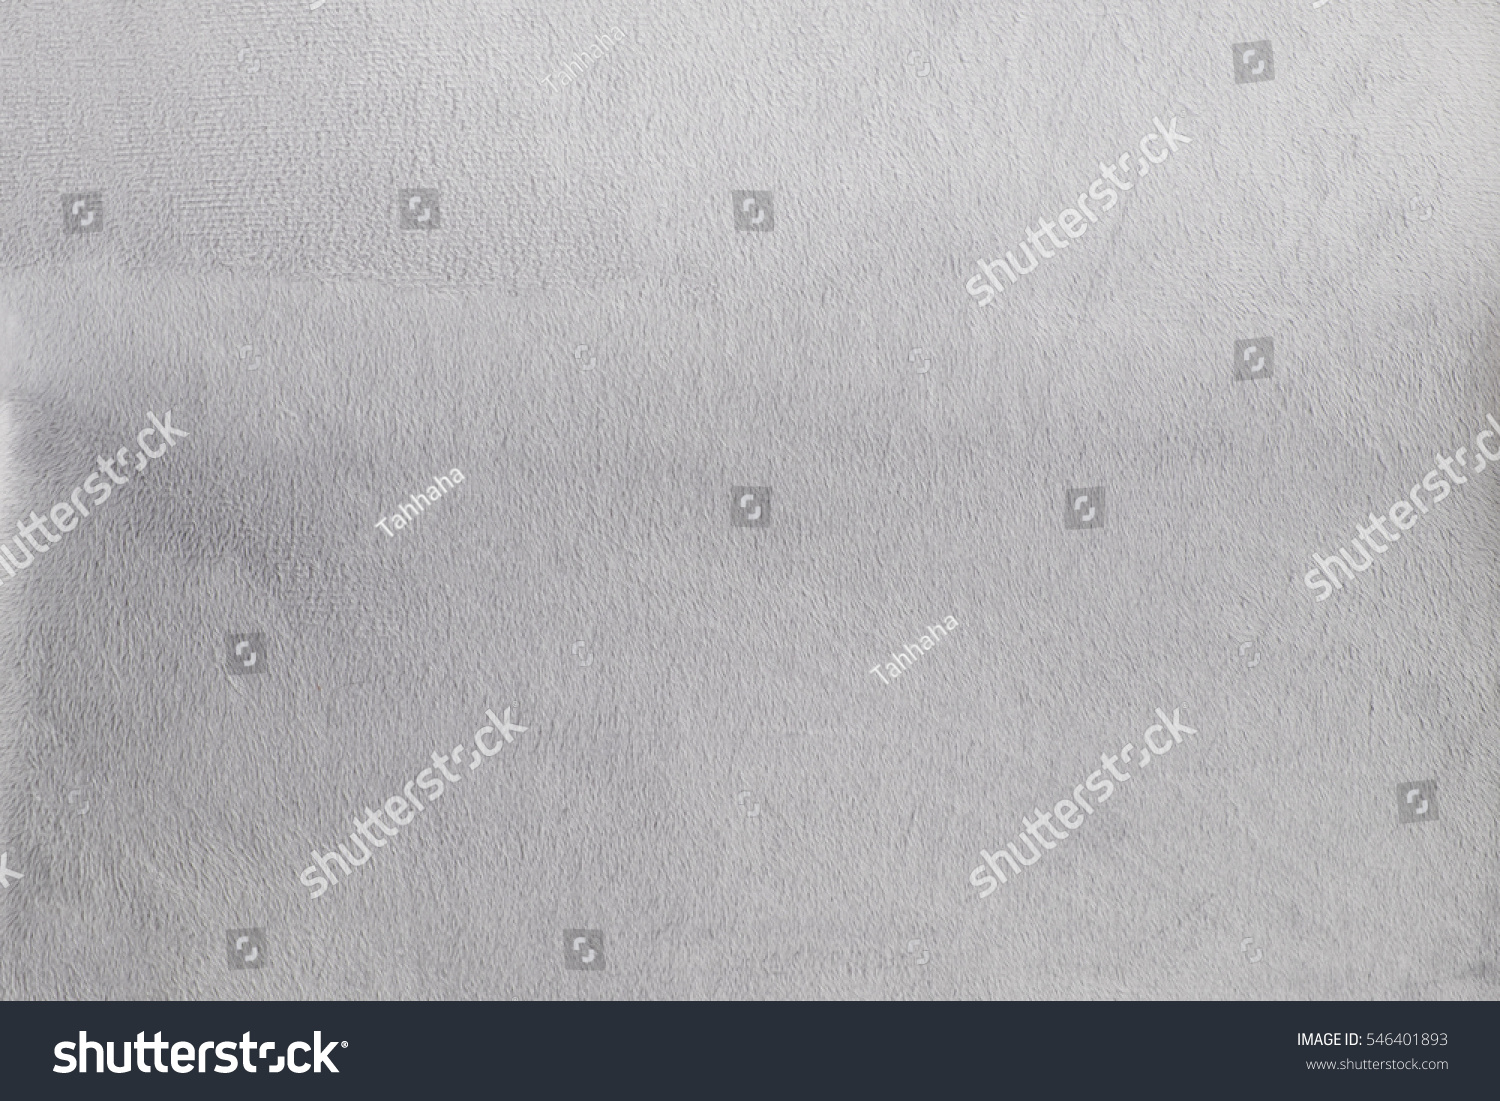 Background gray velvet texture #546401893